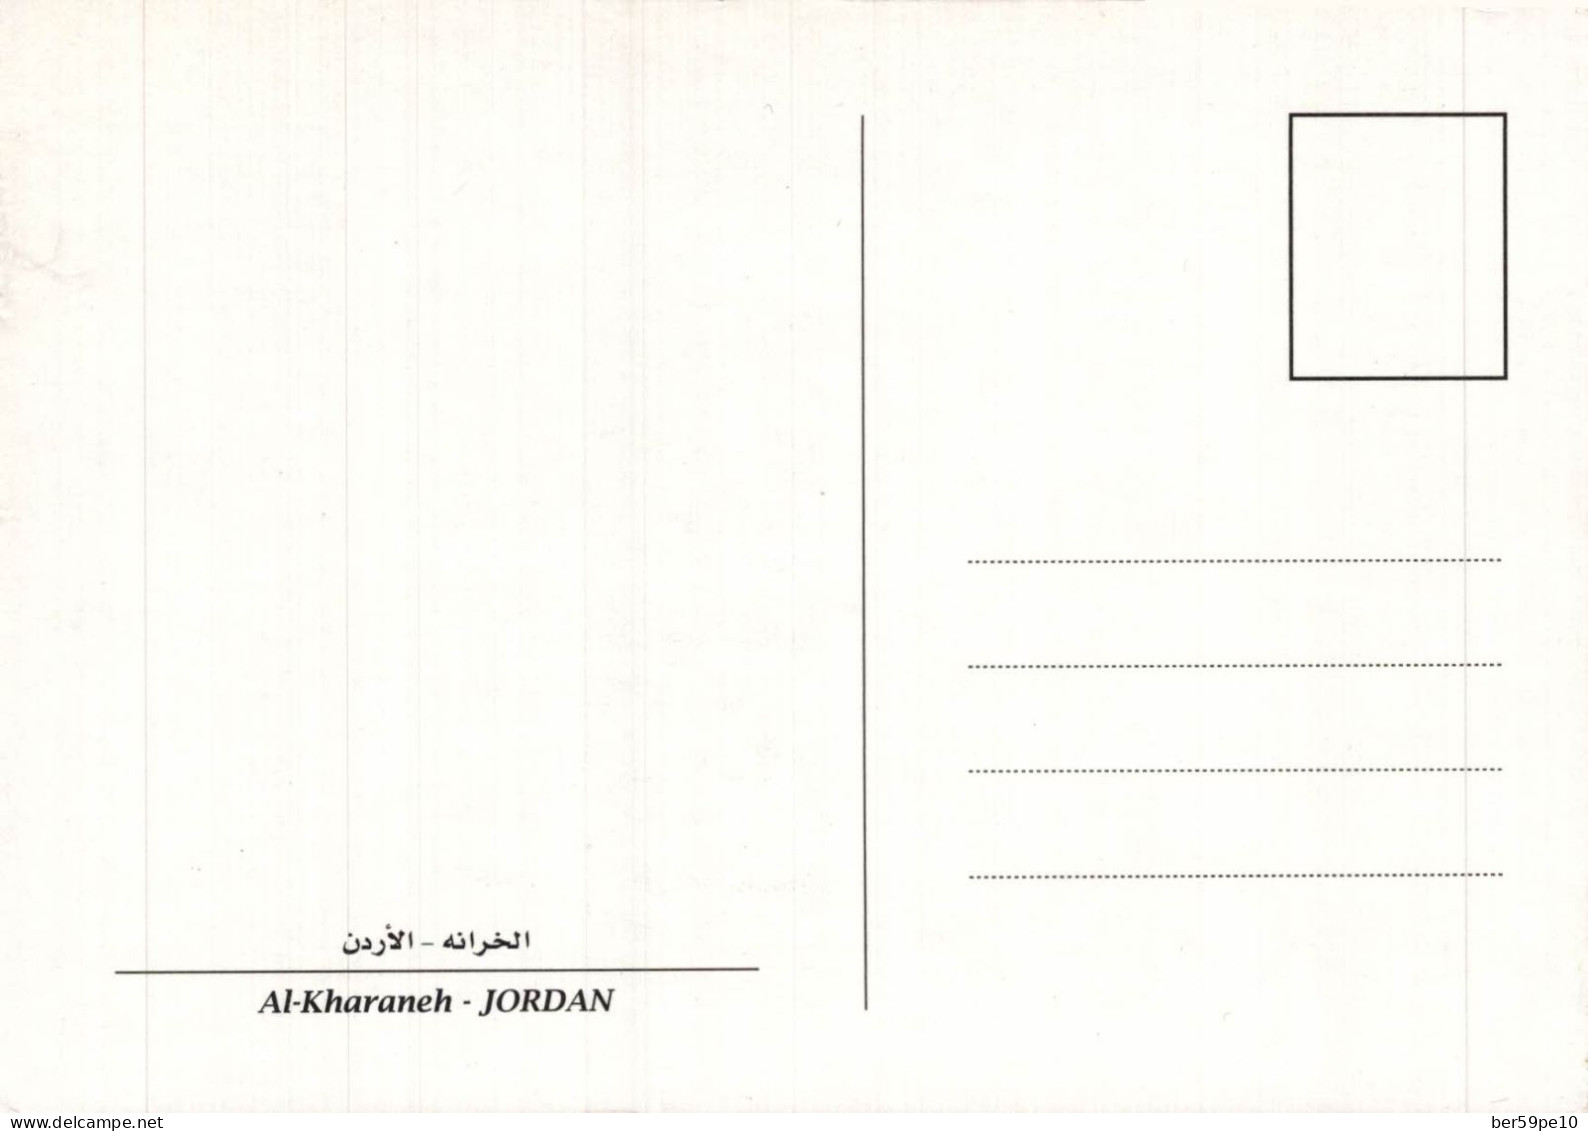 JORDANIE AL-KHARANEH JORDAN - Jordania